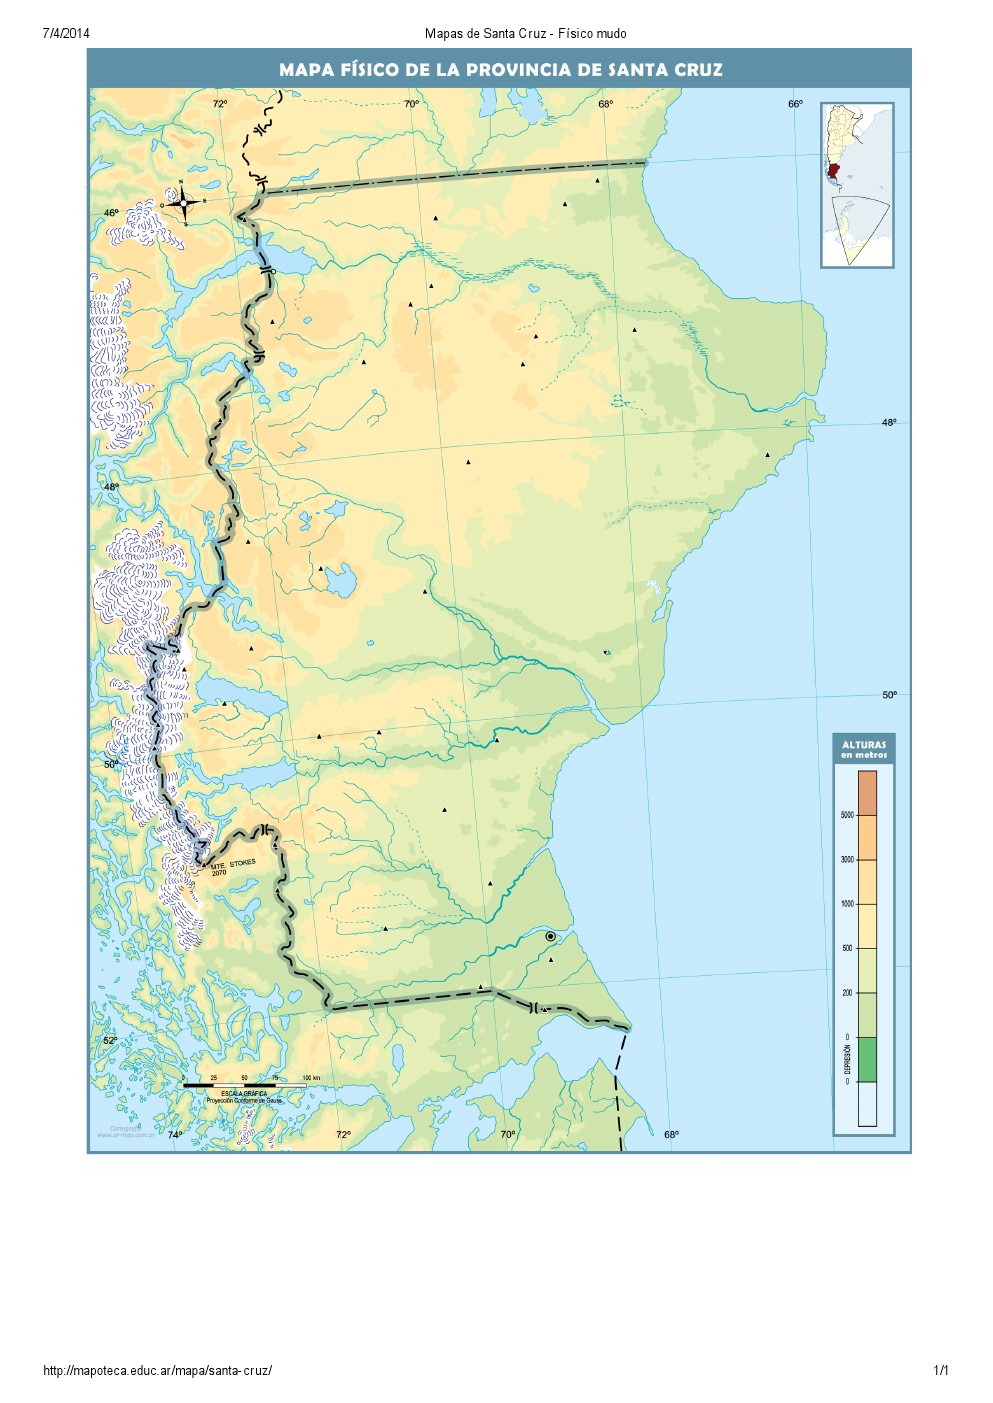 Mapa mudo de ríos de Santa Cruz. Mapoteca de Educ.ar